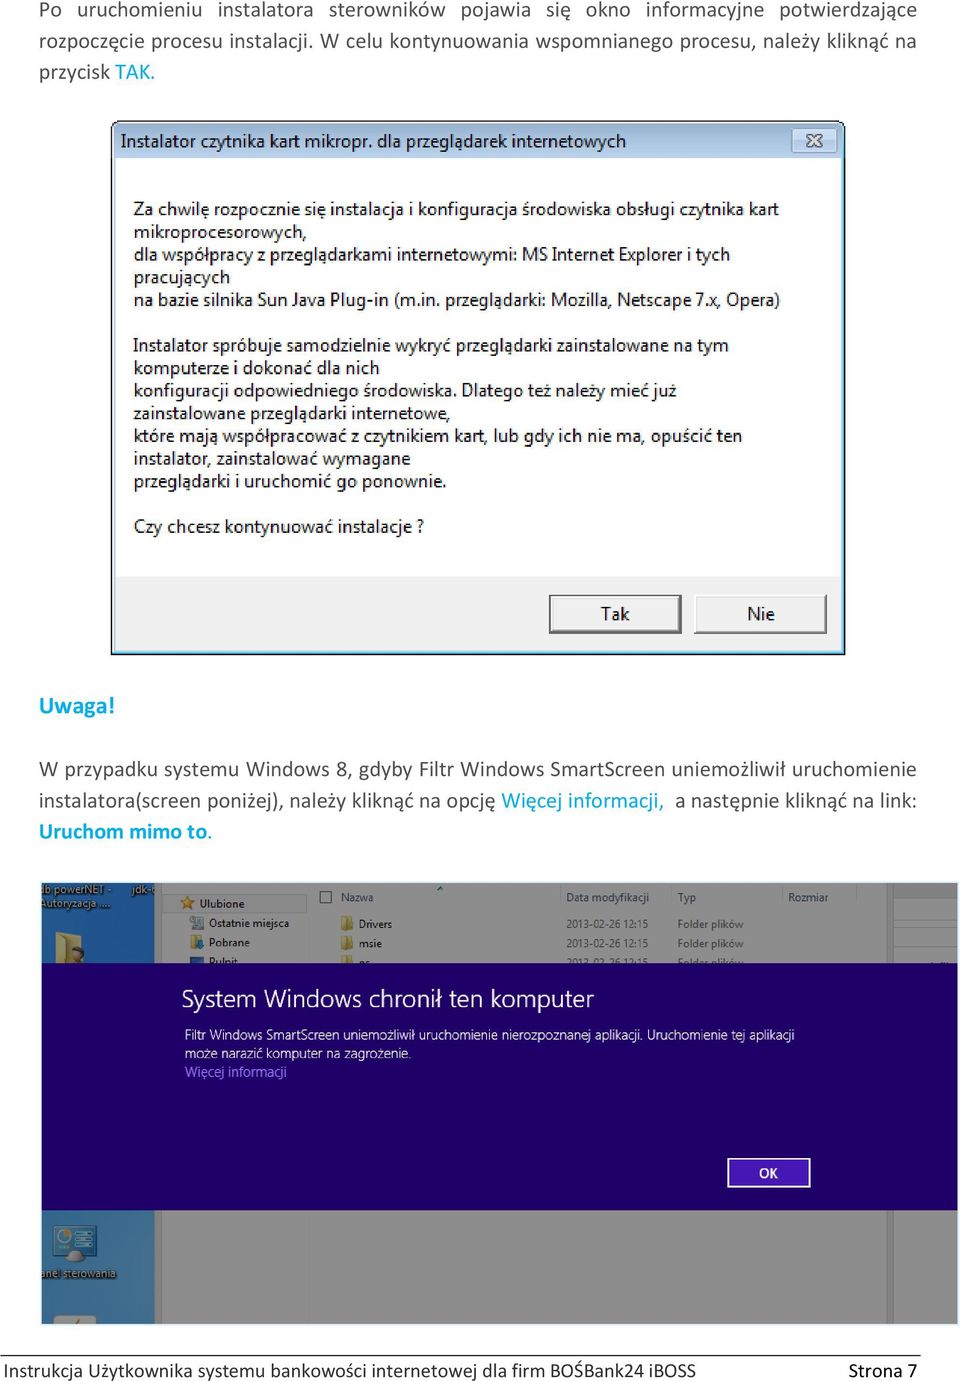 W przypadku systemu Windows 8, gdyby Filtr Windows SmartScreen uniemożliwił uruchomienie instalatora(screen poniżej),